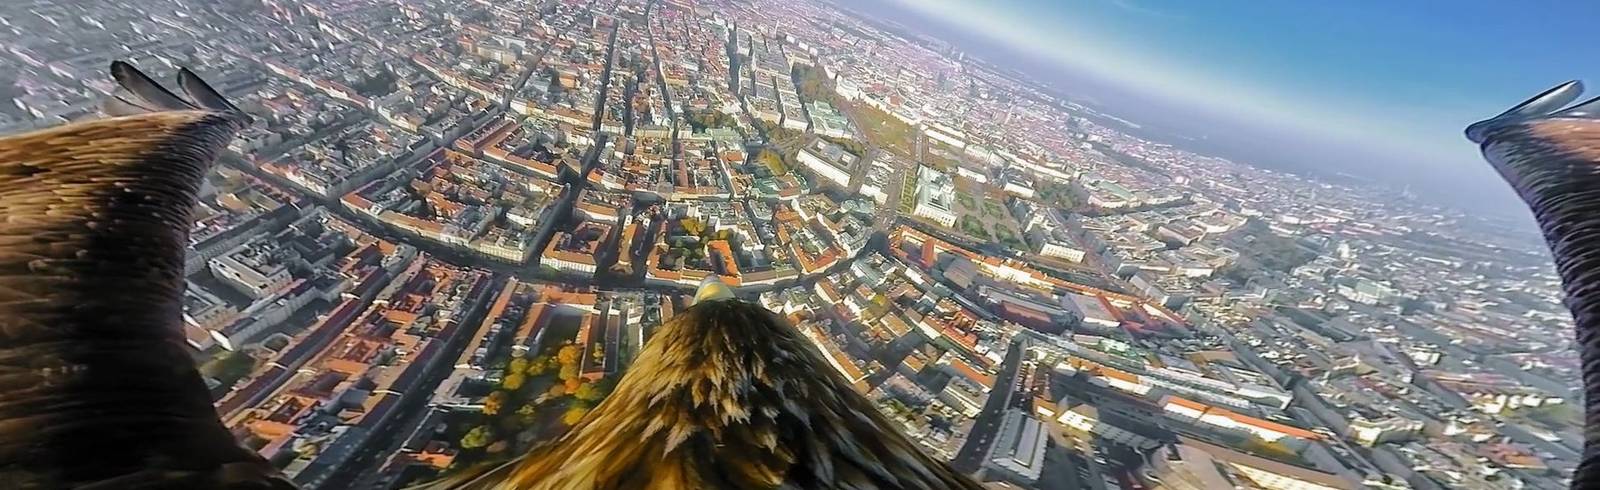 Wien Tourismus lässt die Adler steigen